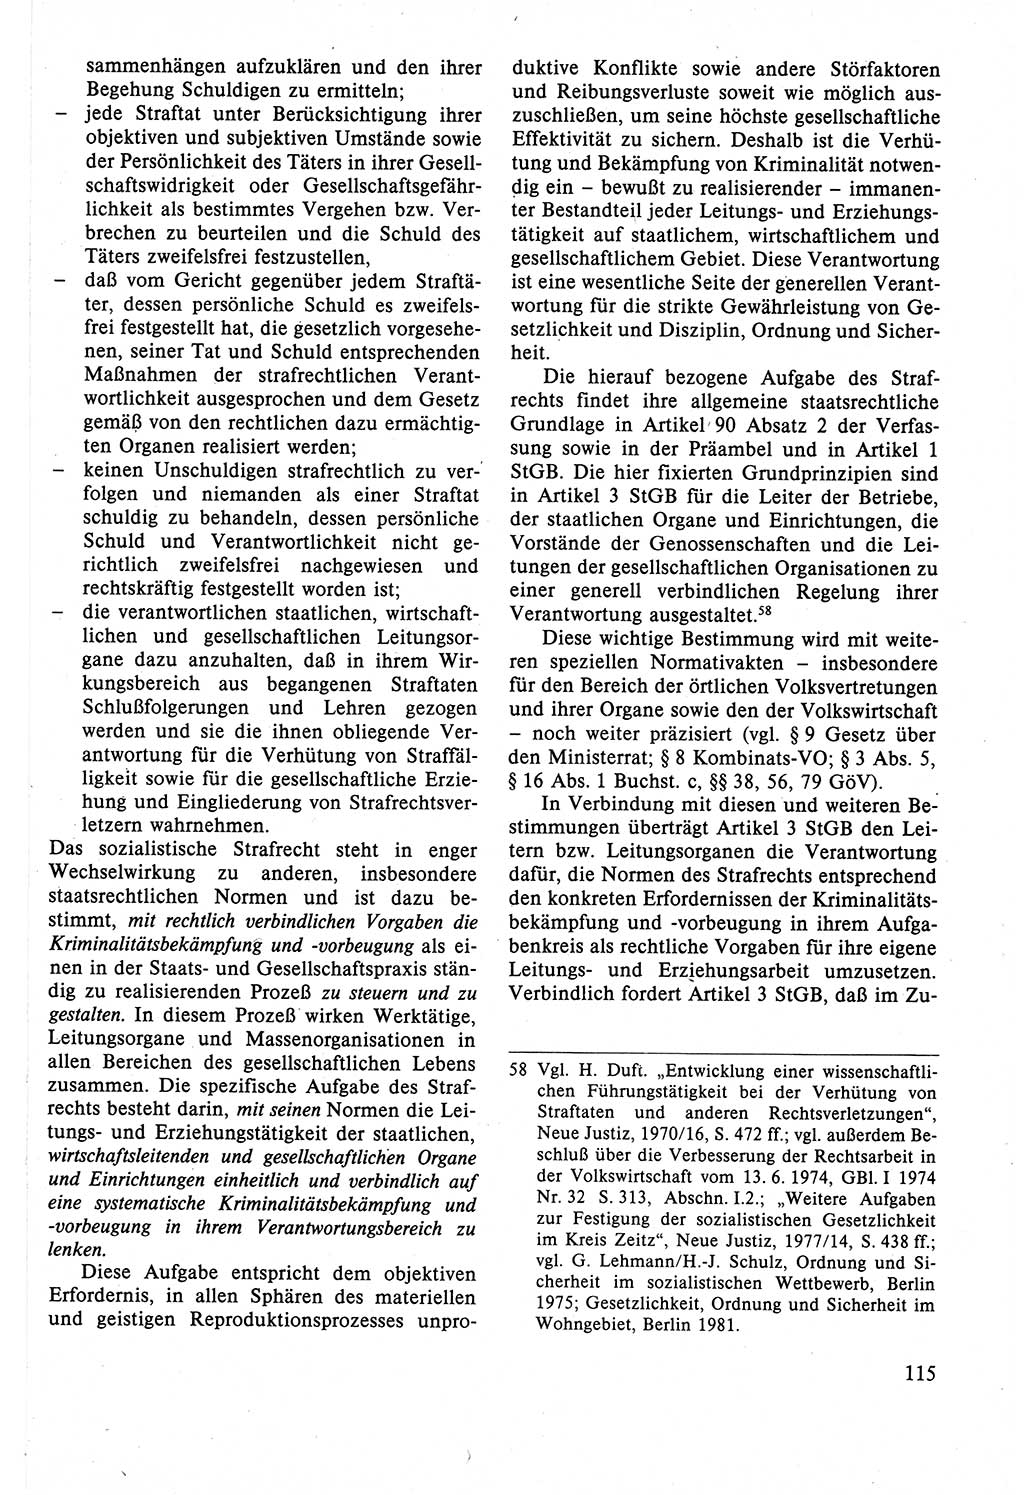 Strafrecht der DDR (Deutsche Demokratische Republik), Lehrbuch 1988, Seite 115 (Strafr. DDR Lb. 1988, S. 115)